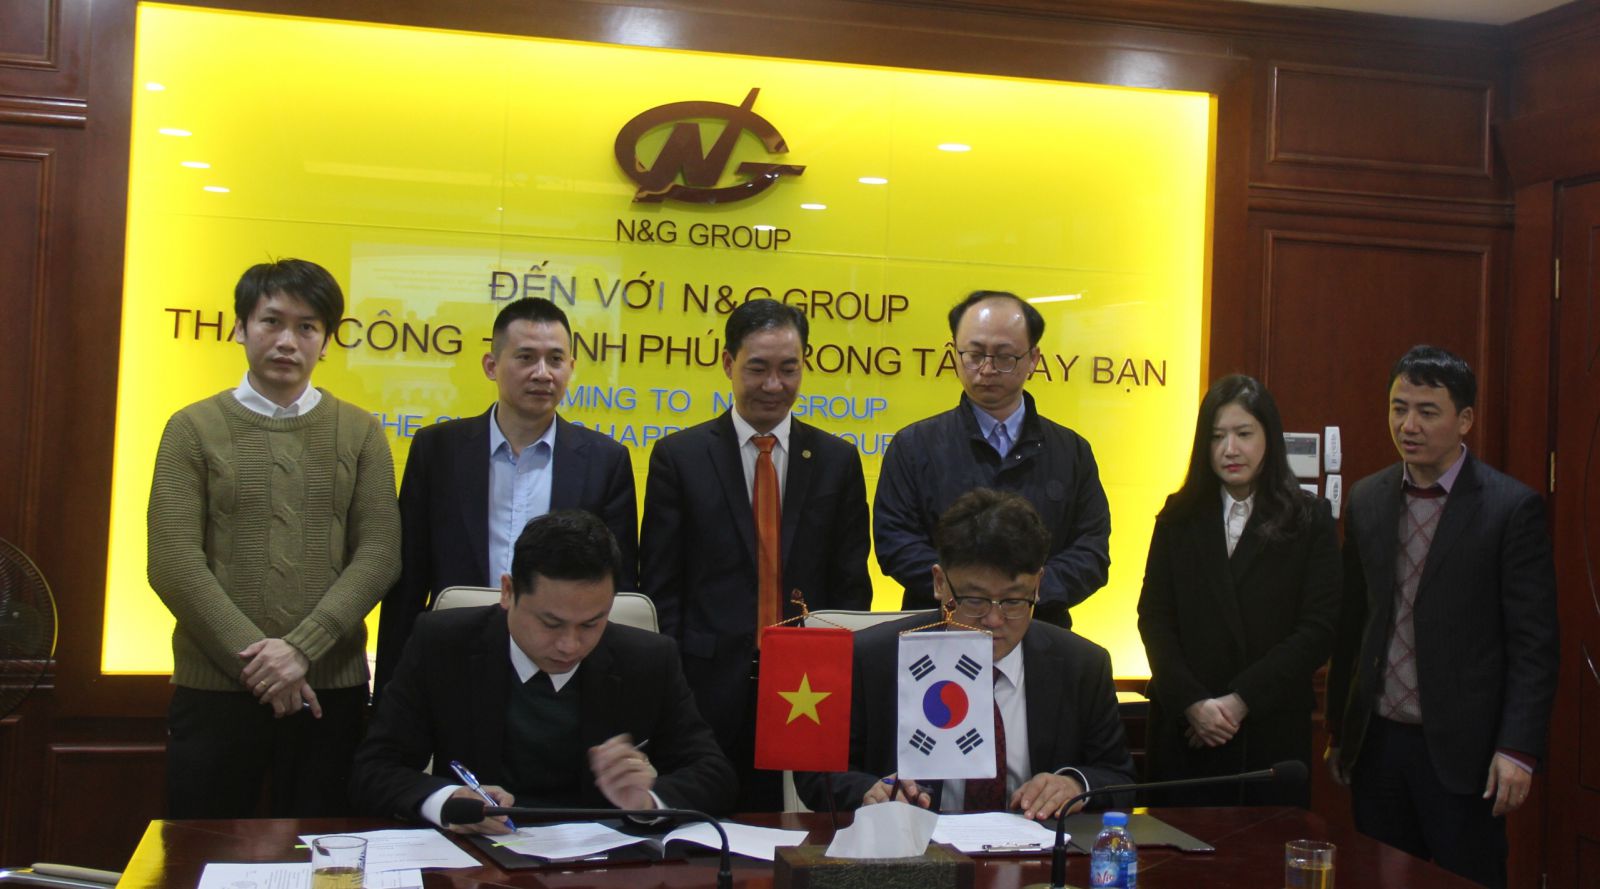 Hợp tác công nghiệp hỗ trợ Việt Nam-Hàn Quốc được đánh giá nhiều triển vọng